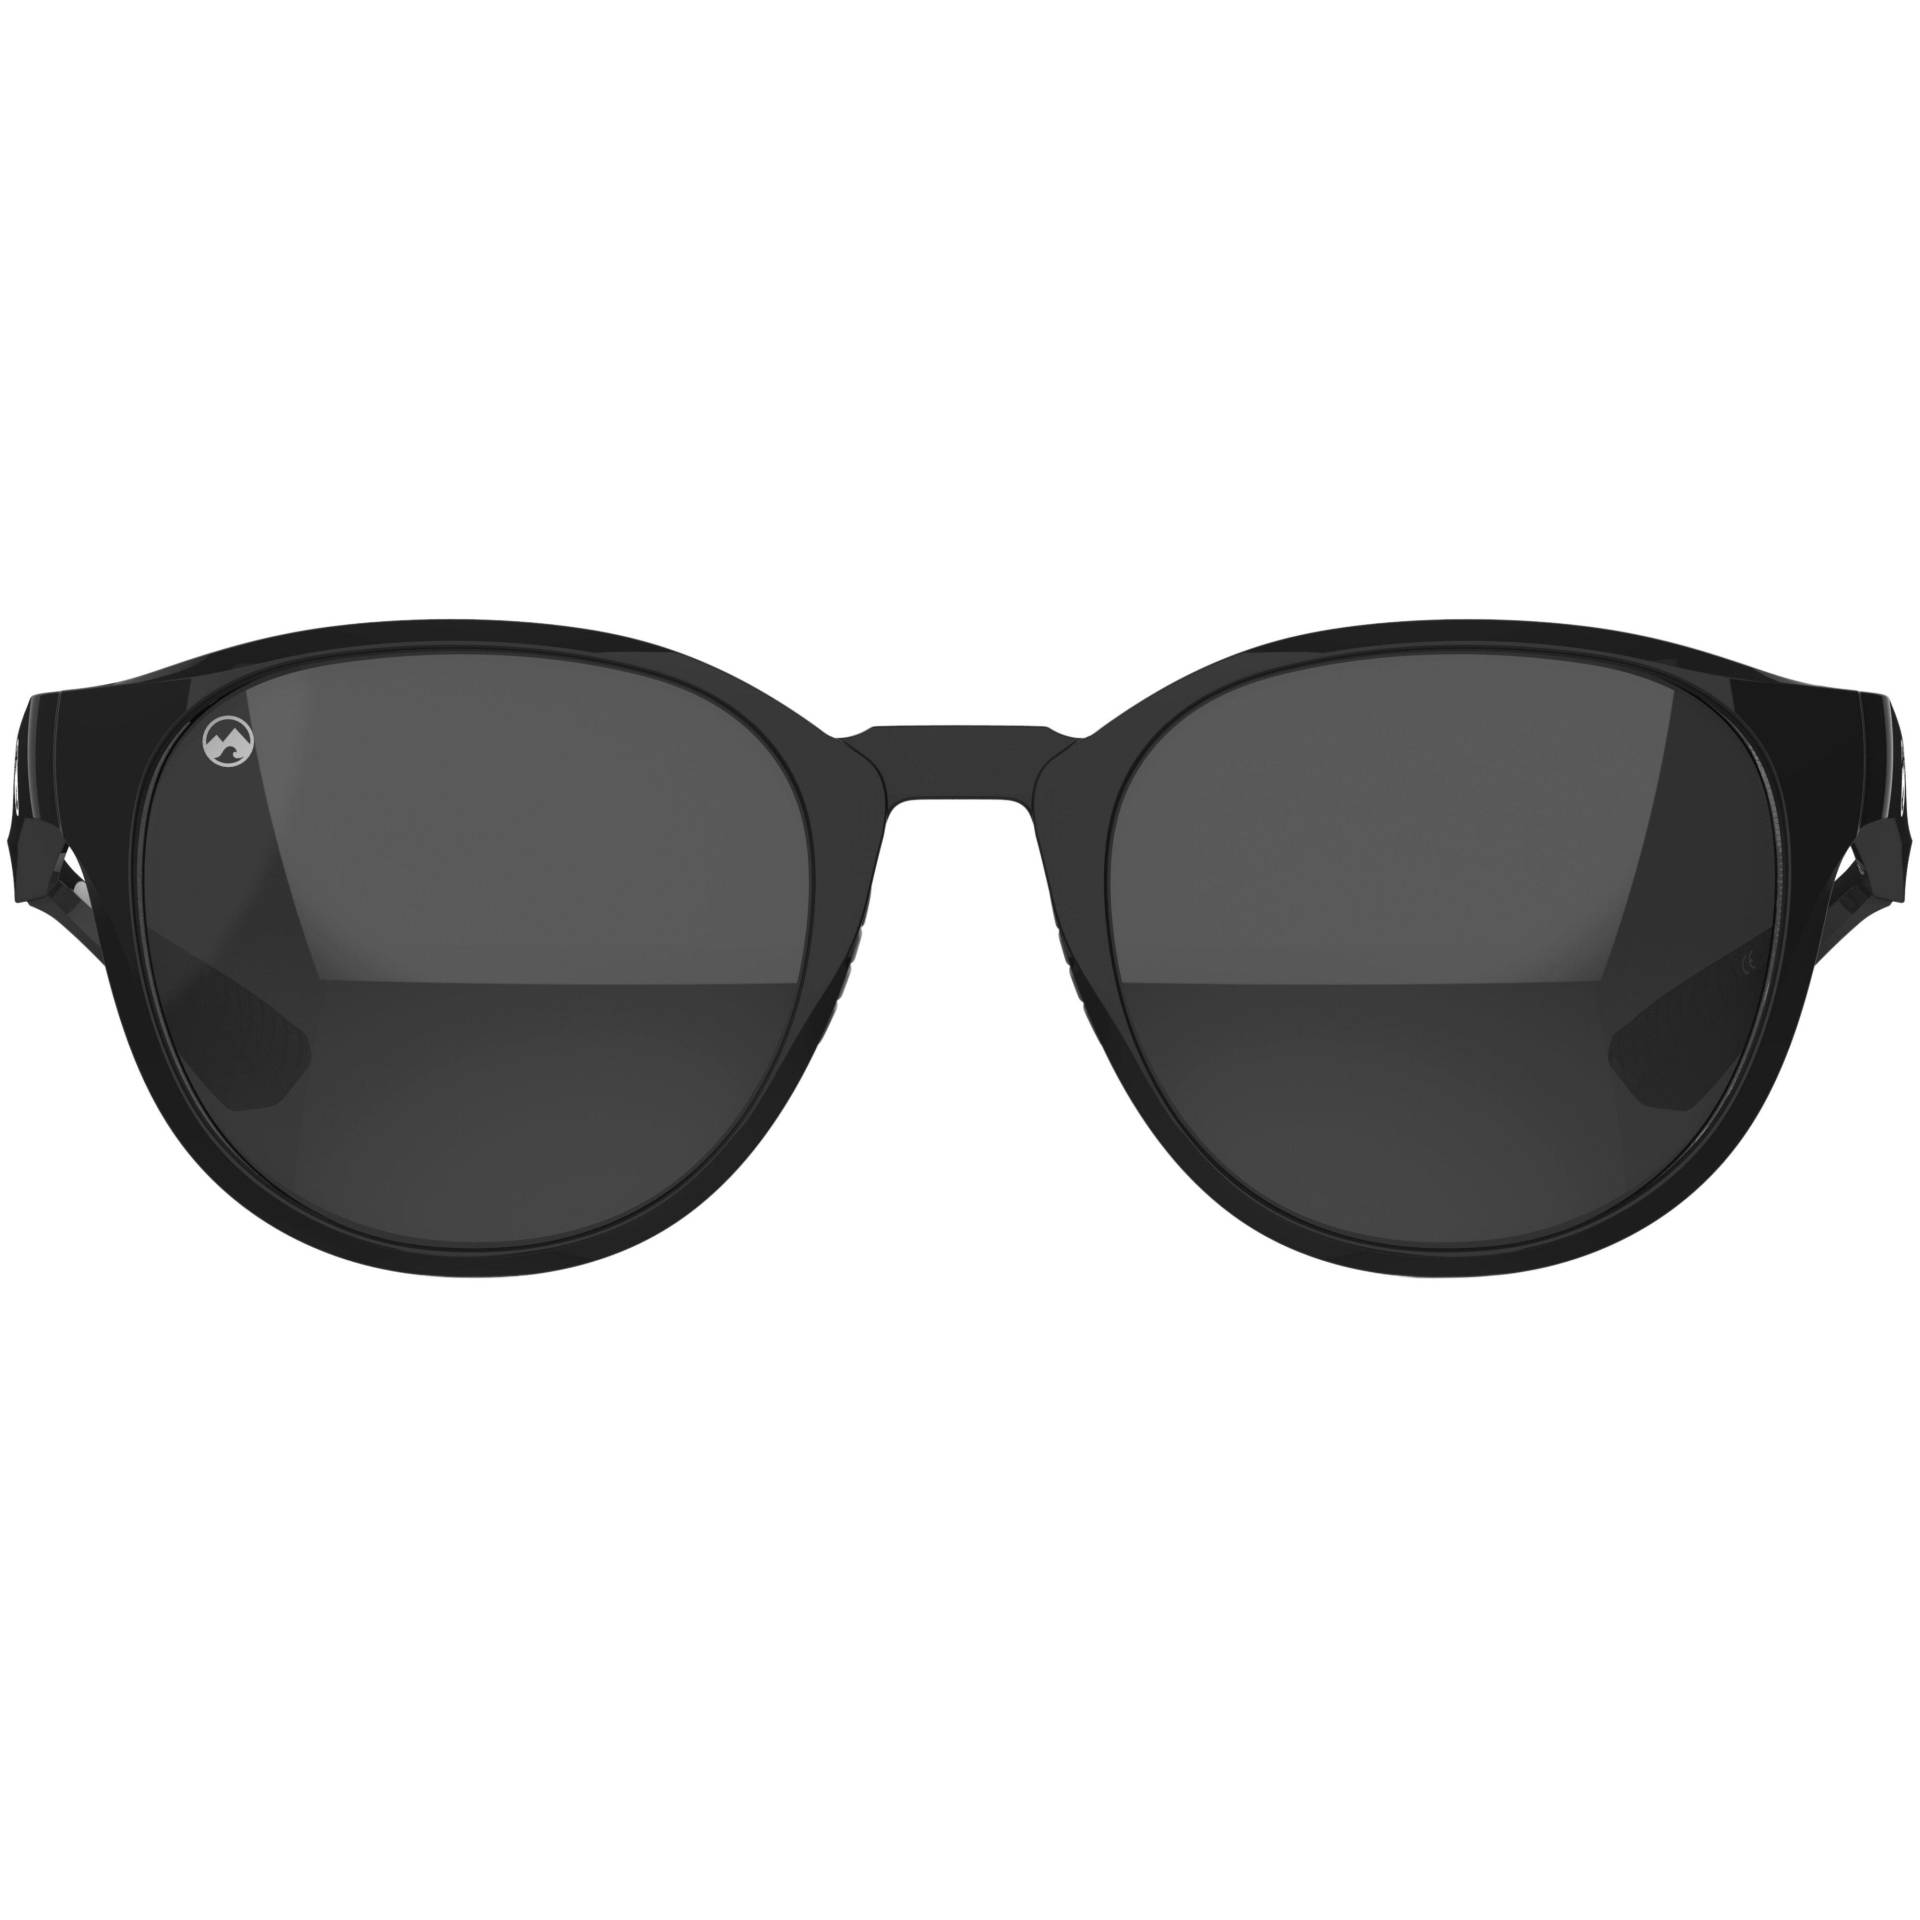 Hakuba Sonnenbrille Herren Schwarz 49mm von MowMow